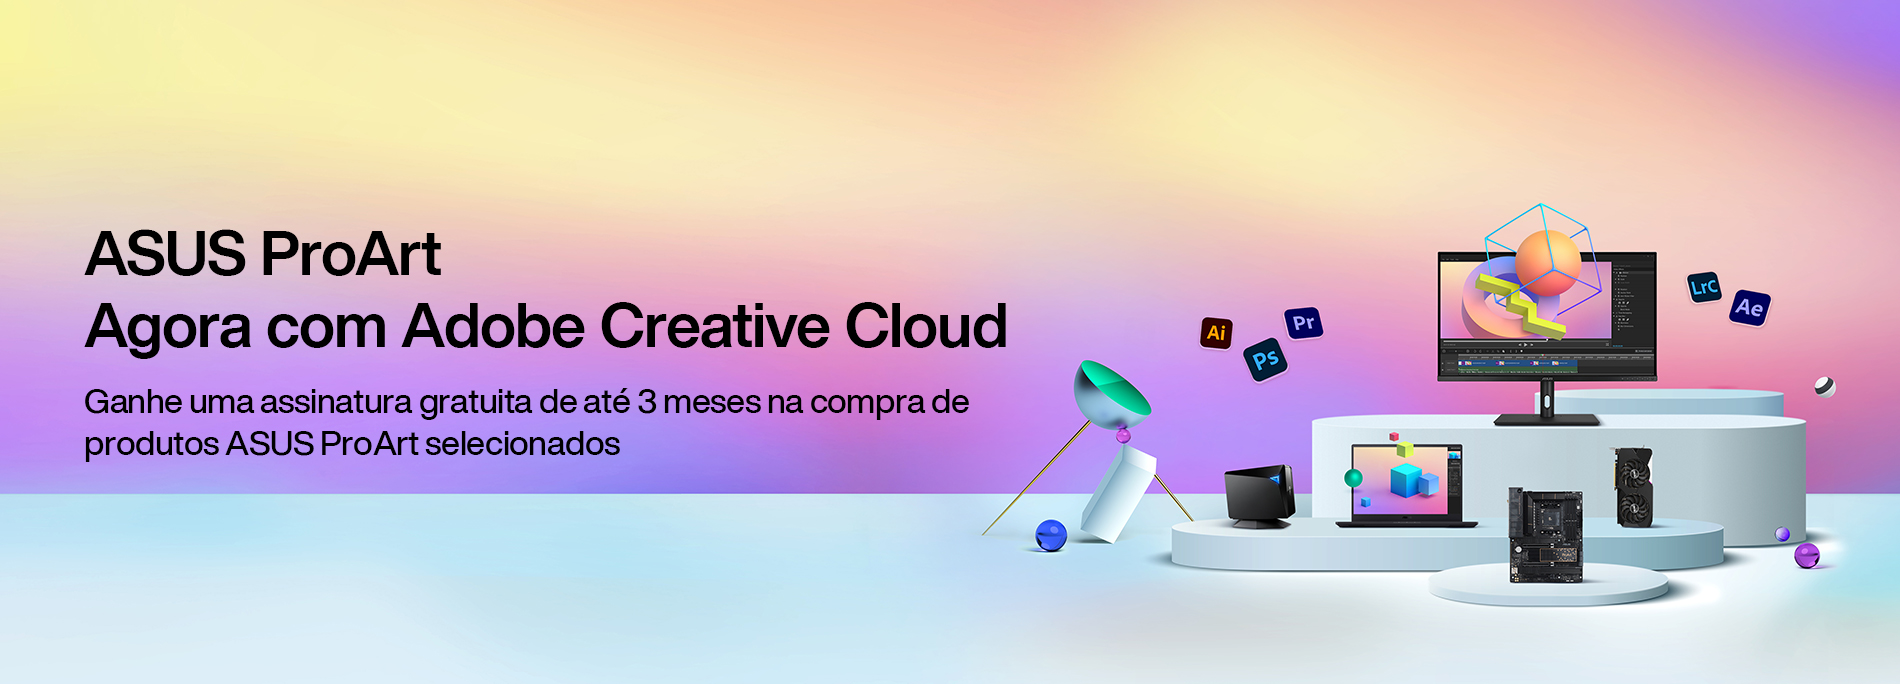 ASUS agora com 3 meses de Adobe Creative Cloud